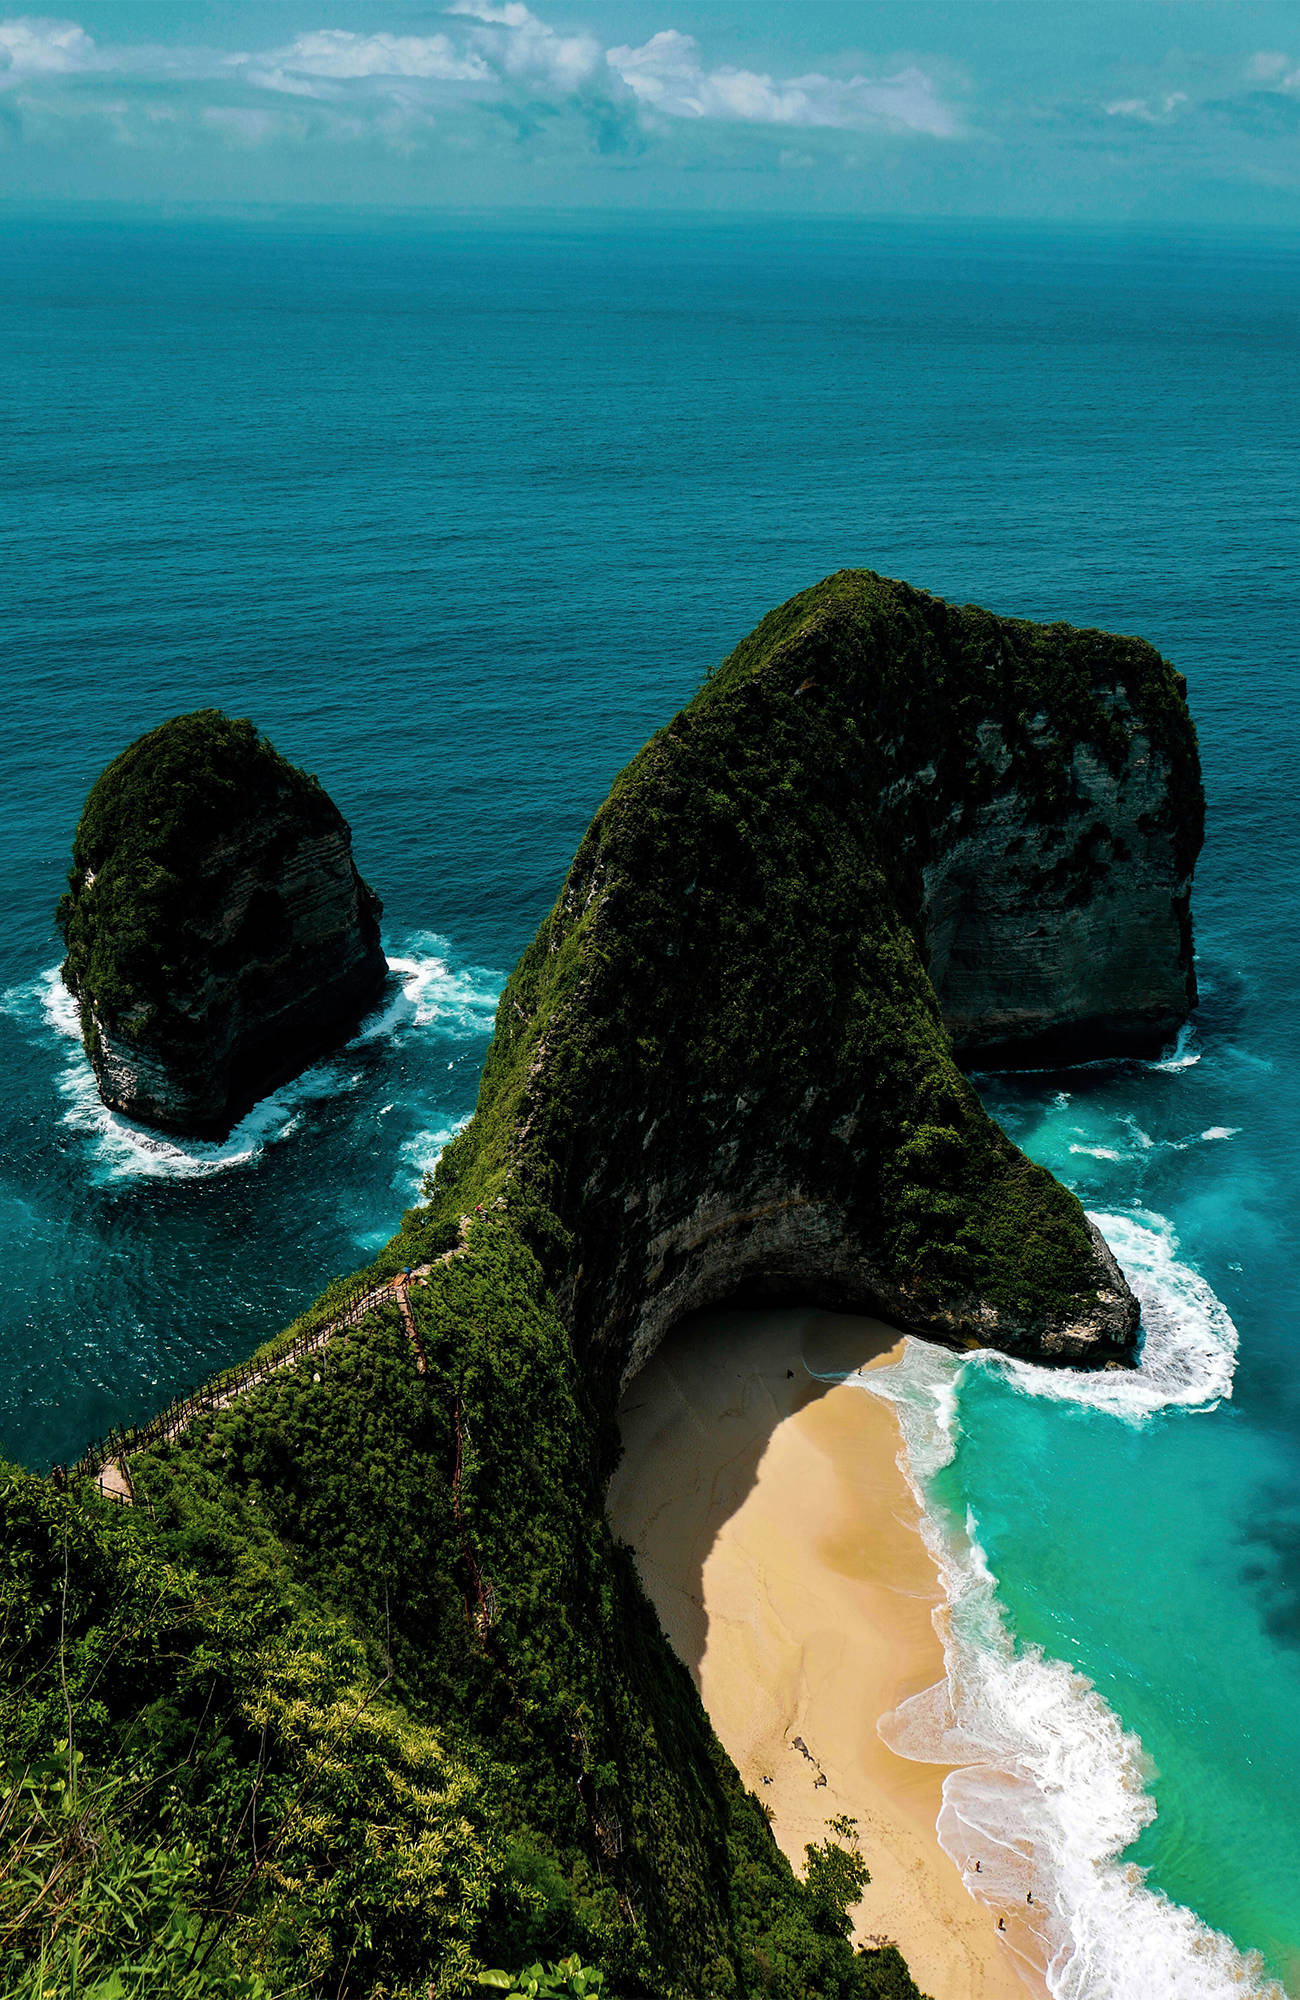 Balin matkalla sinua vastassa ovat upeat maisemat